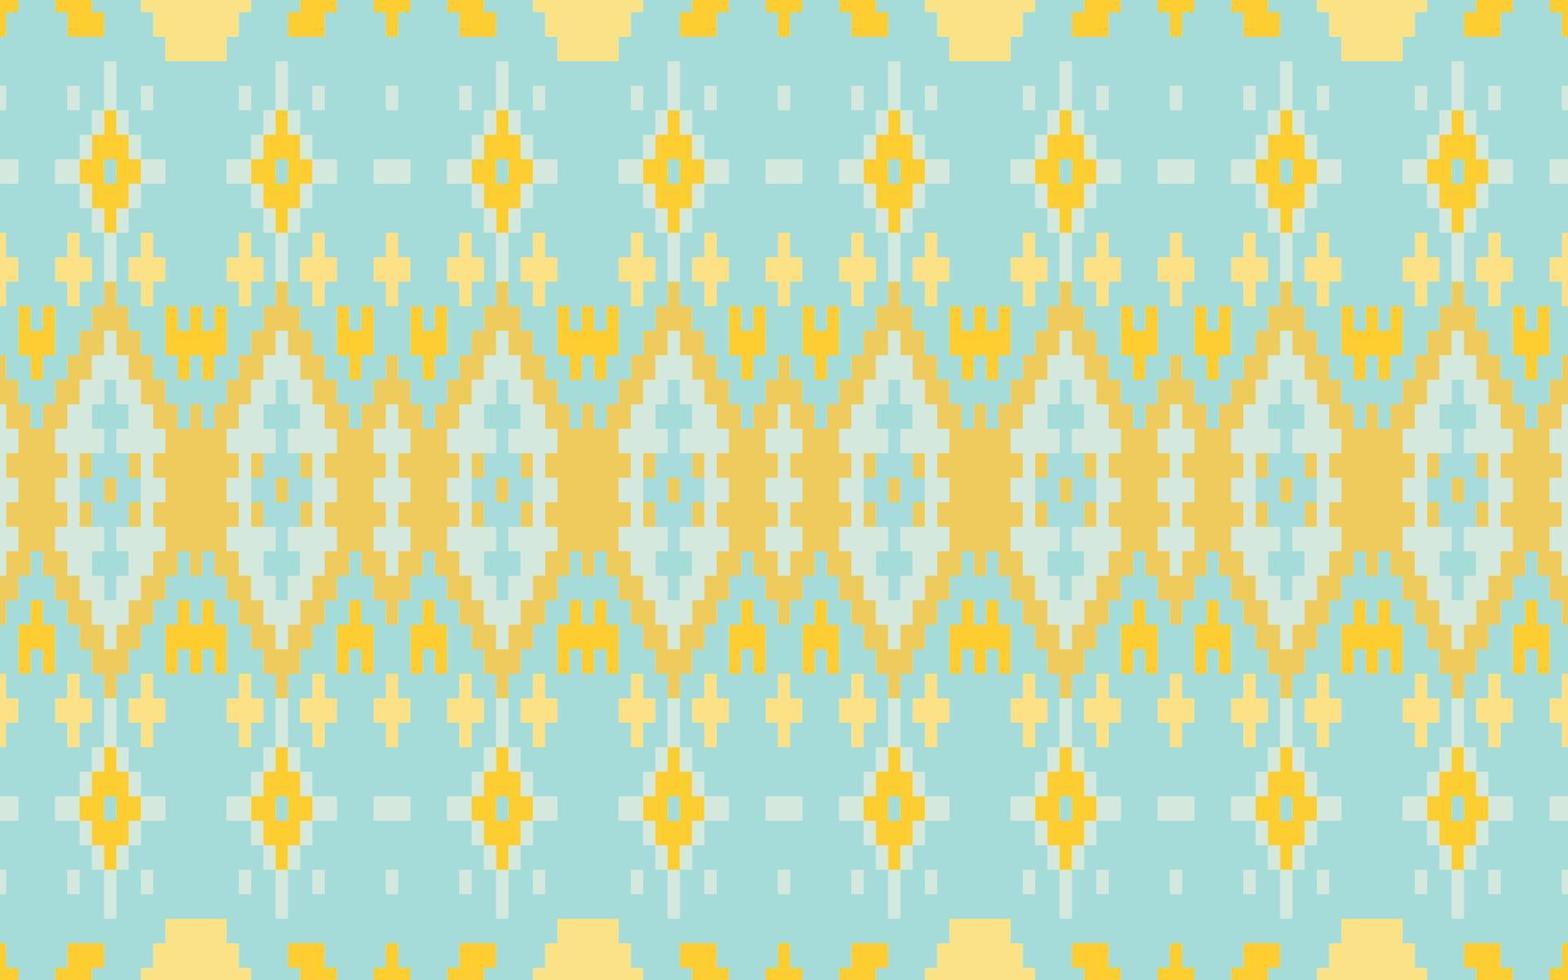 aztekisches geometrisches design afrikanische muster stoff aus afrika navajo nation muster ornament traditionelle kunst mexikanisches kleid design für druck tapeten papier textur hintergrund kleid vektor